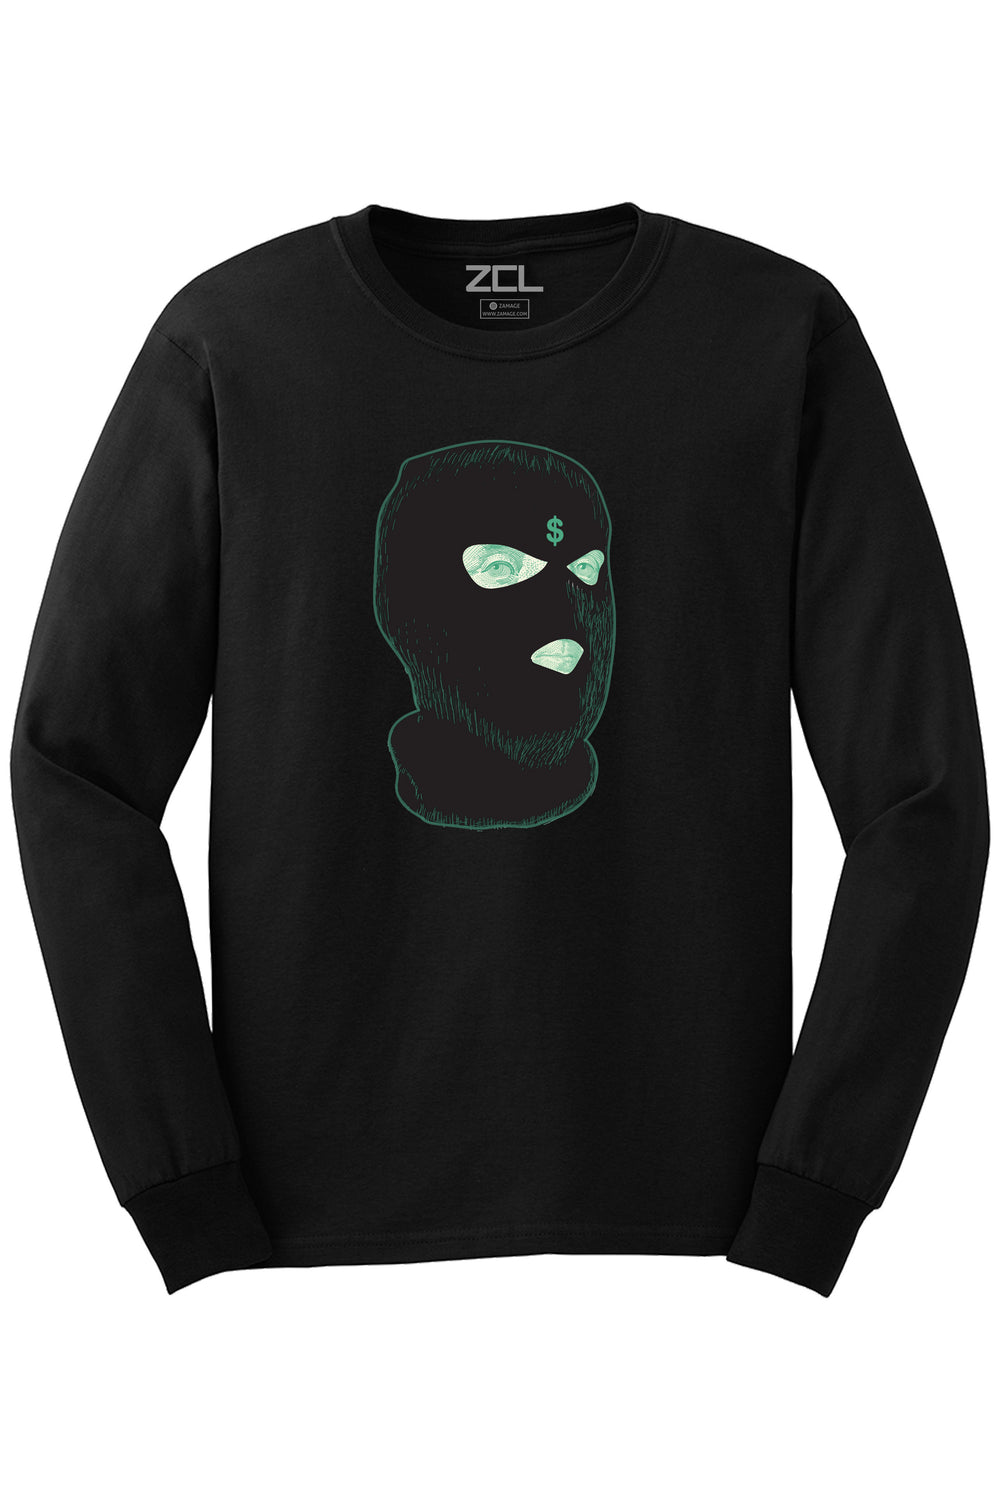 Ski Mask Money Long Sleeve Tee (Black Logo) - Zamage